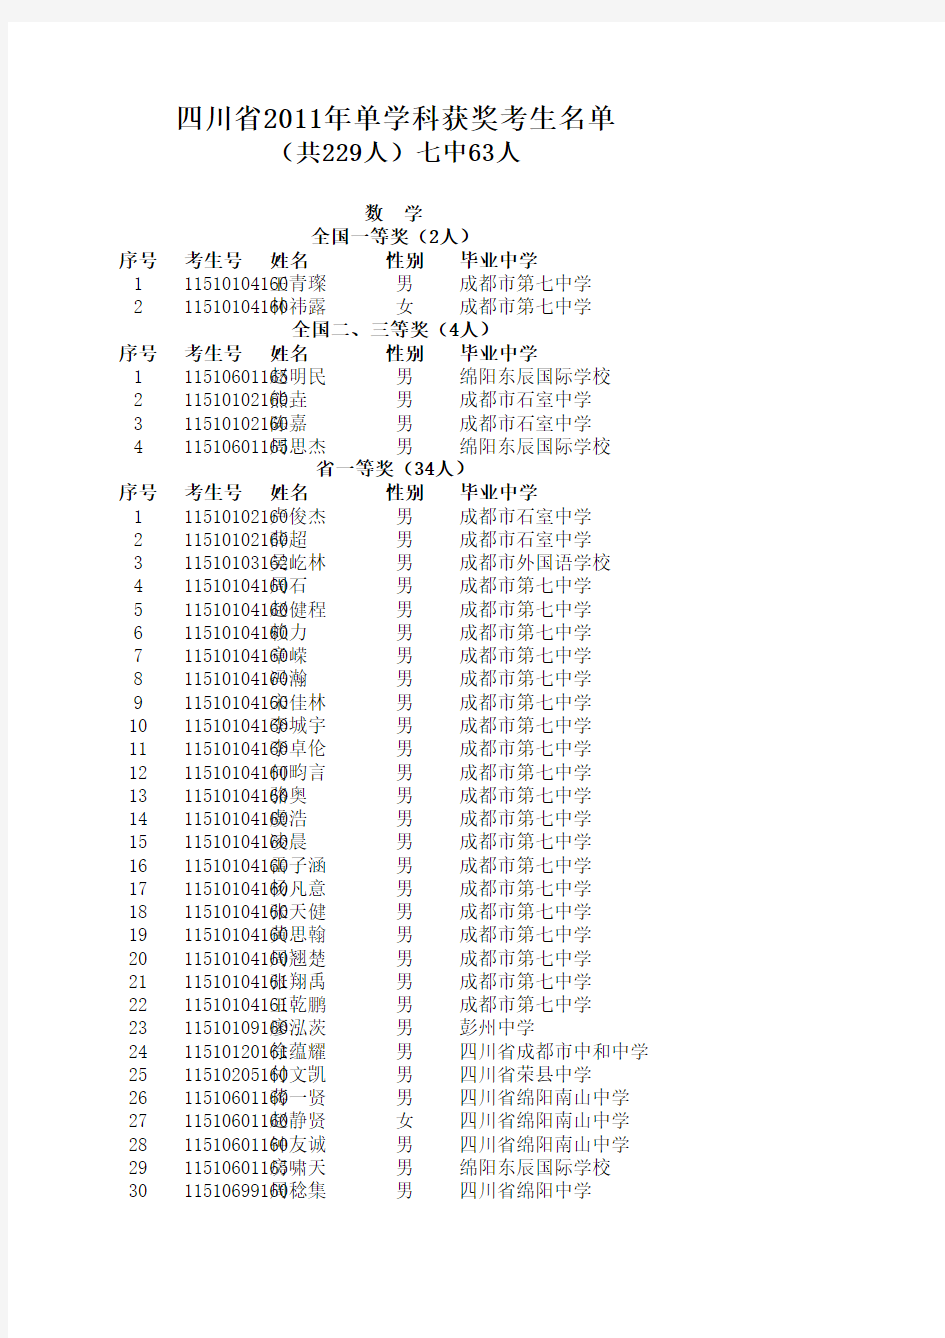 四川省2011年普通高校招生享受录取照顾的考生名单公示